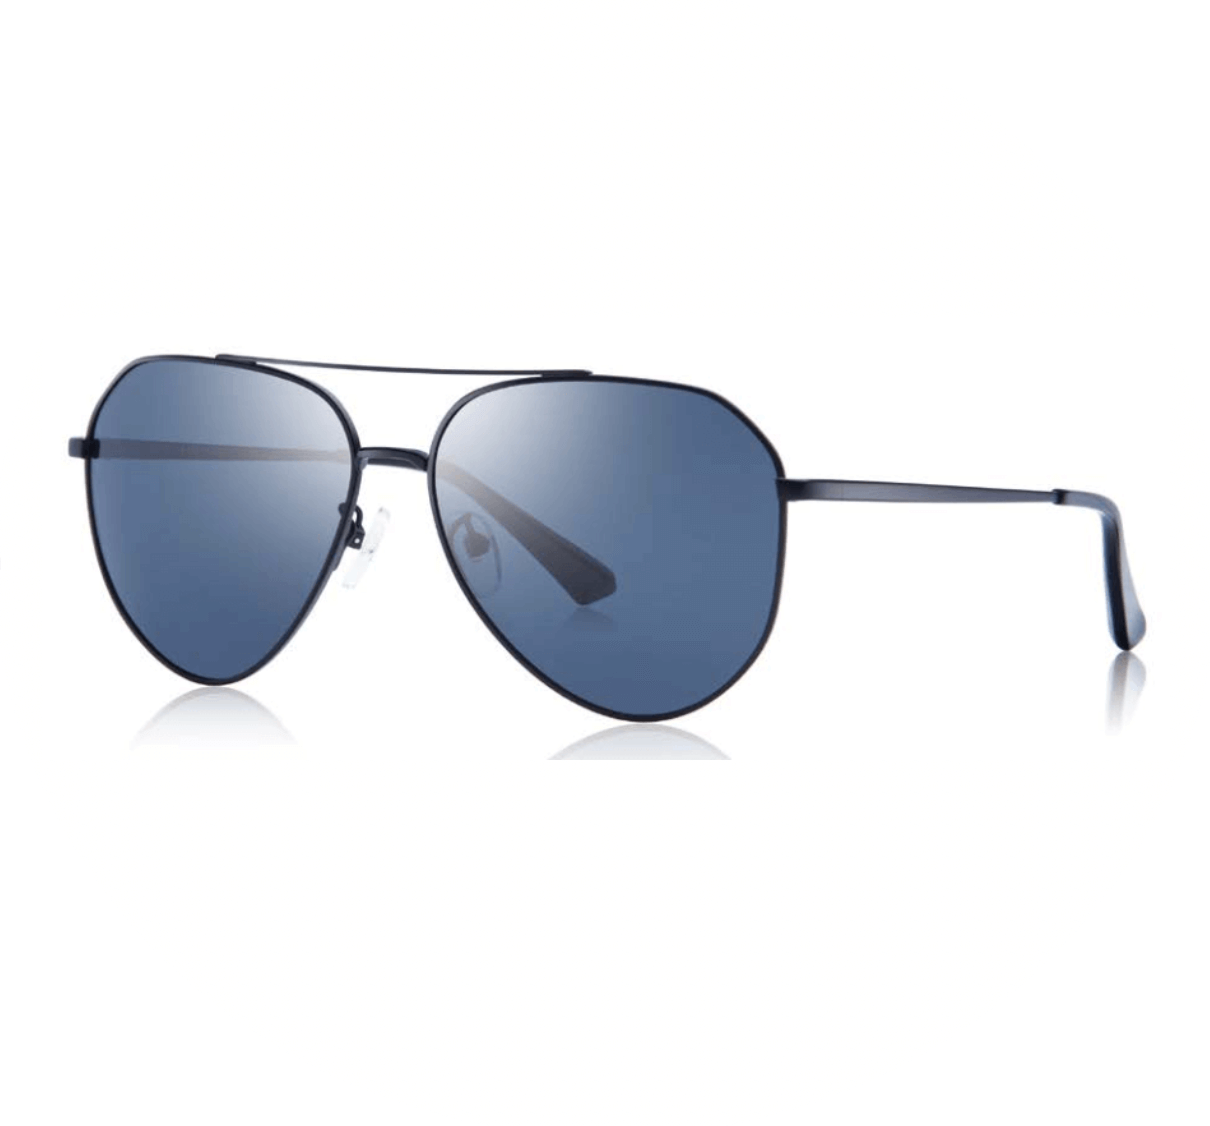 Custom Aviator Sunglasses from China - Custom Sunglasses Manufacturer - Custom Eyewear Manufacturers in China